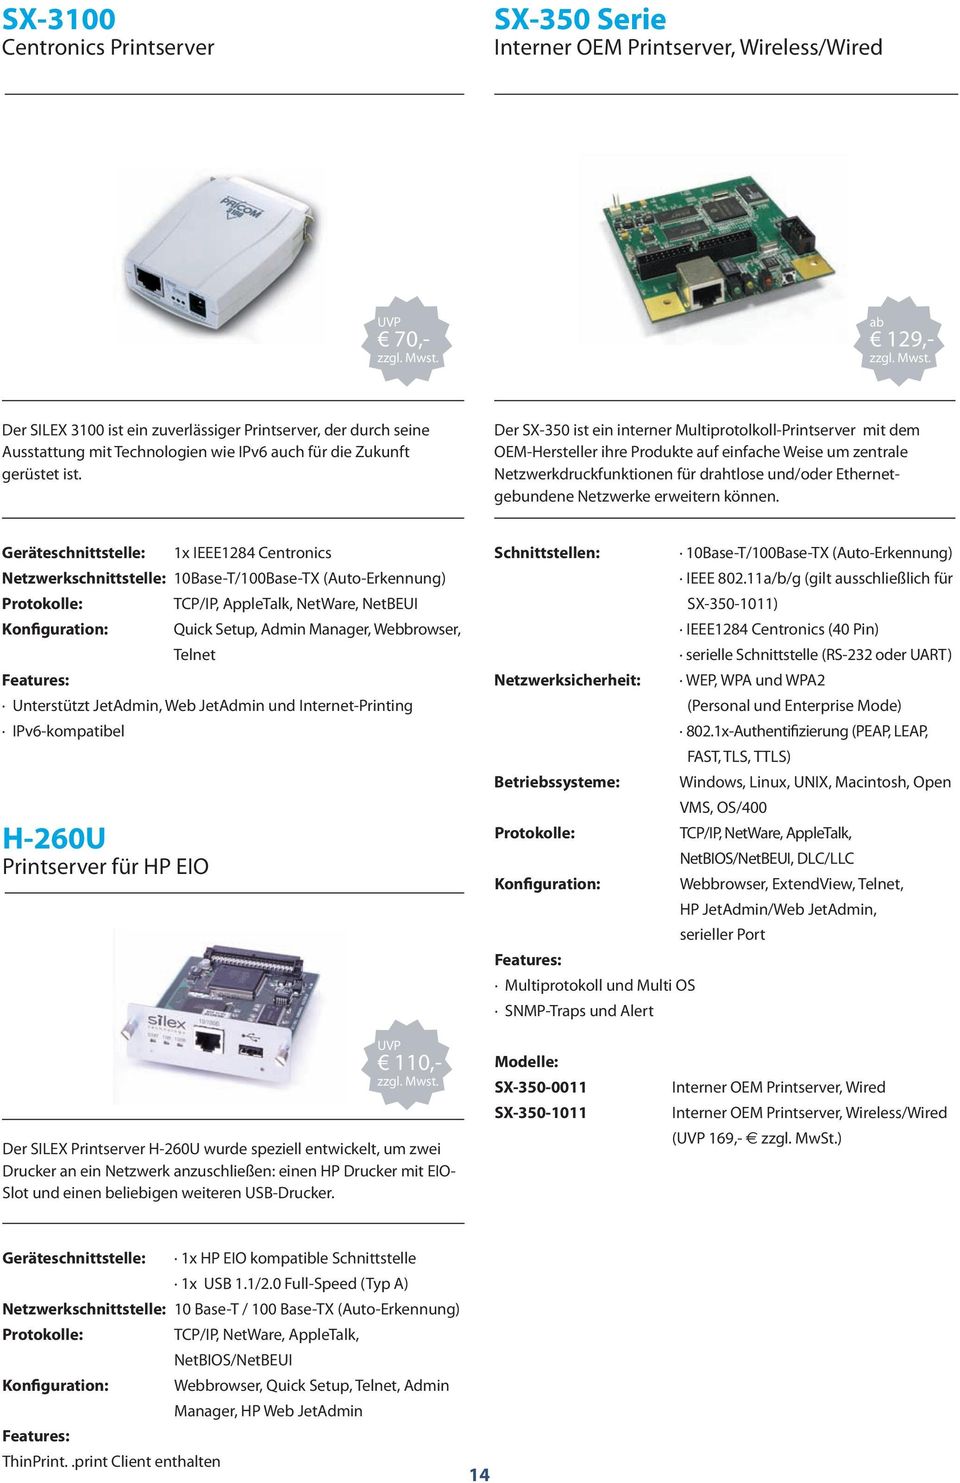 Der SX-350 ist ein interner Multiprotolkoll-Printserver mit dem OEM-Hersteller ihre Produkte auf einfache Weise um zentrale Netzwerkdruckfunktionen für drahtlose und/oder Ethernetgebundene Netzwerke